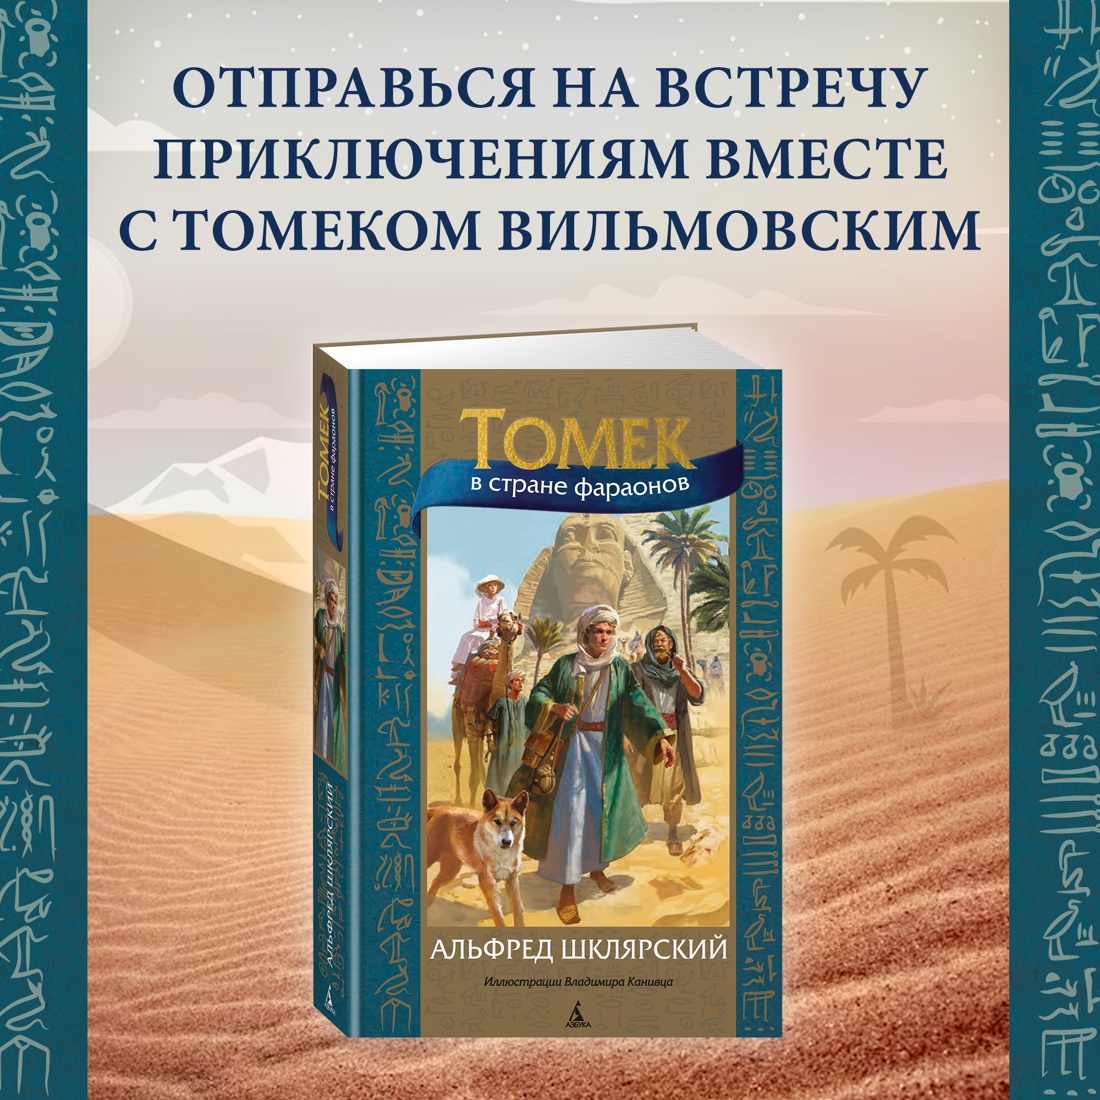 Промо материал к книге "Томек в стране фараонов" №0